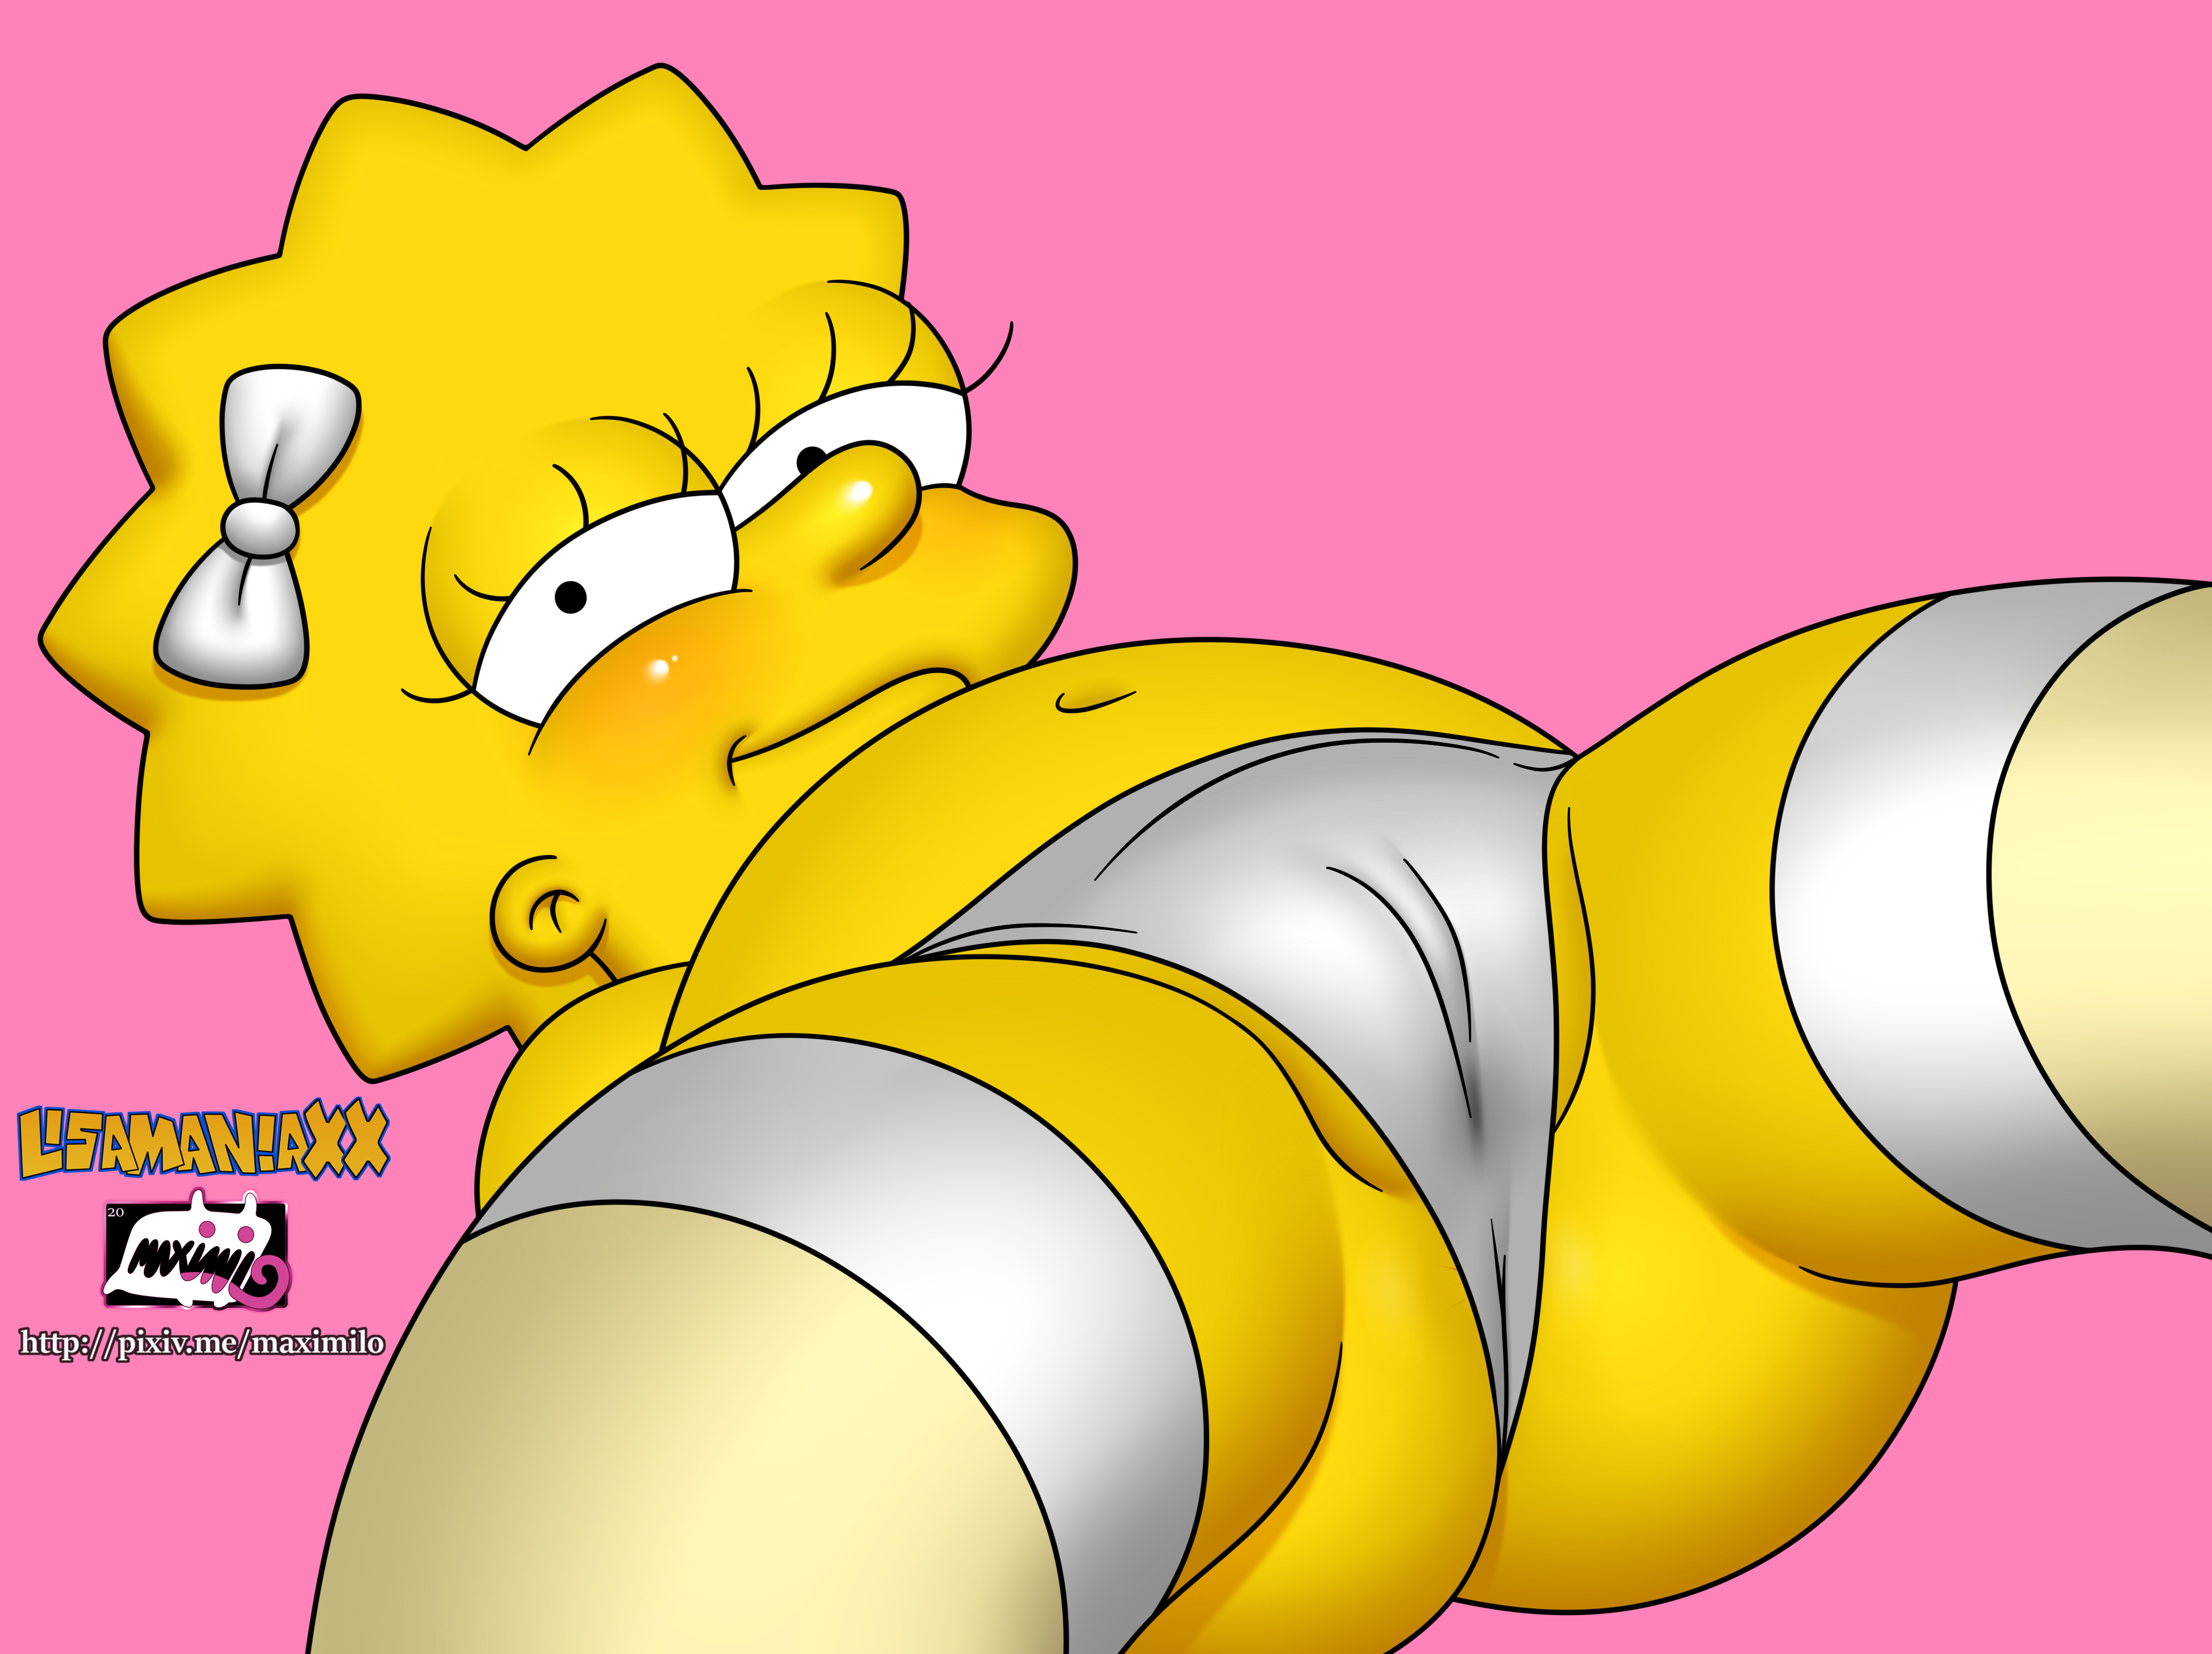 4353459 - Lisa_Simpson The_Simpsons maximilo.jpg.